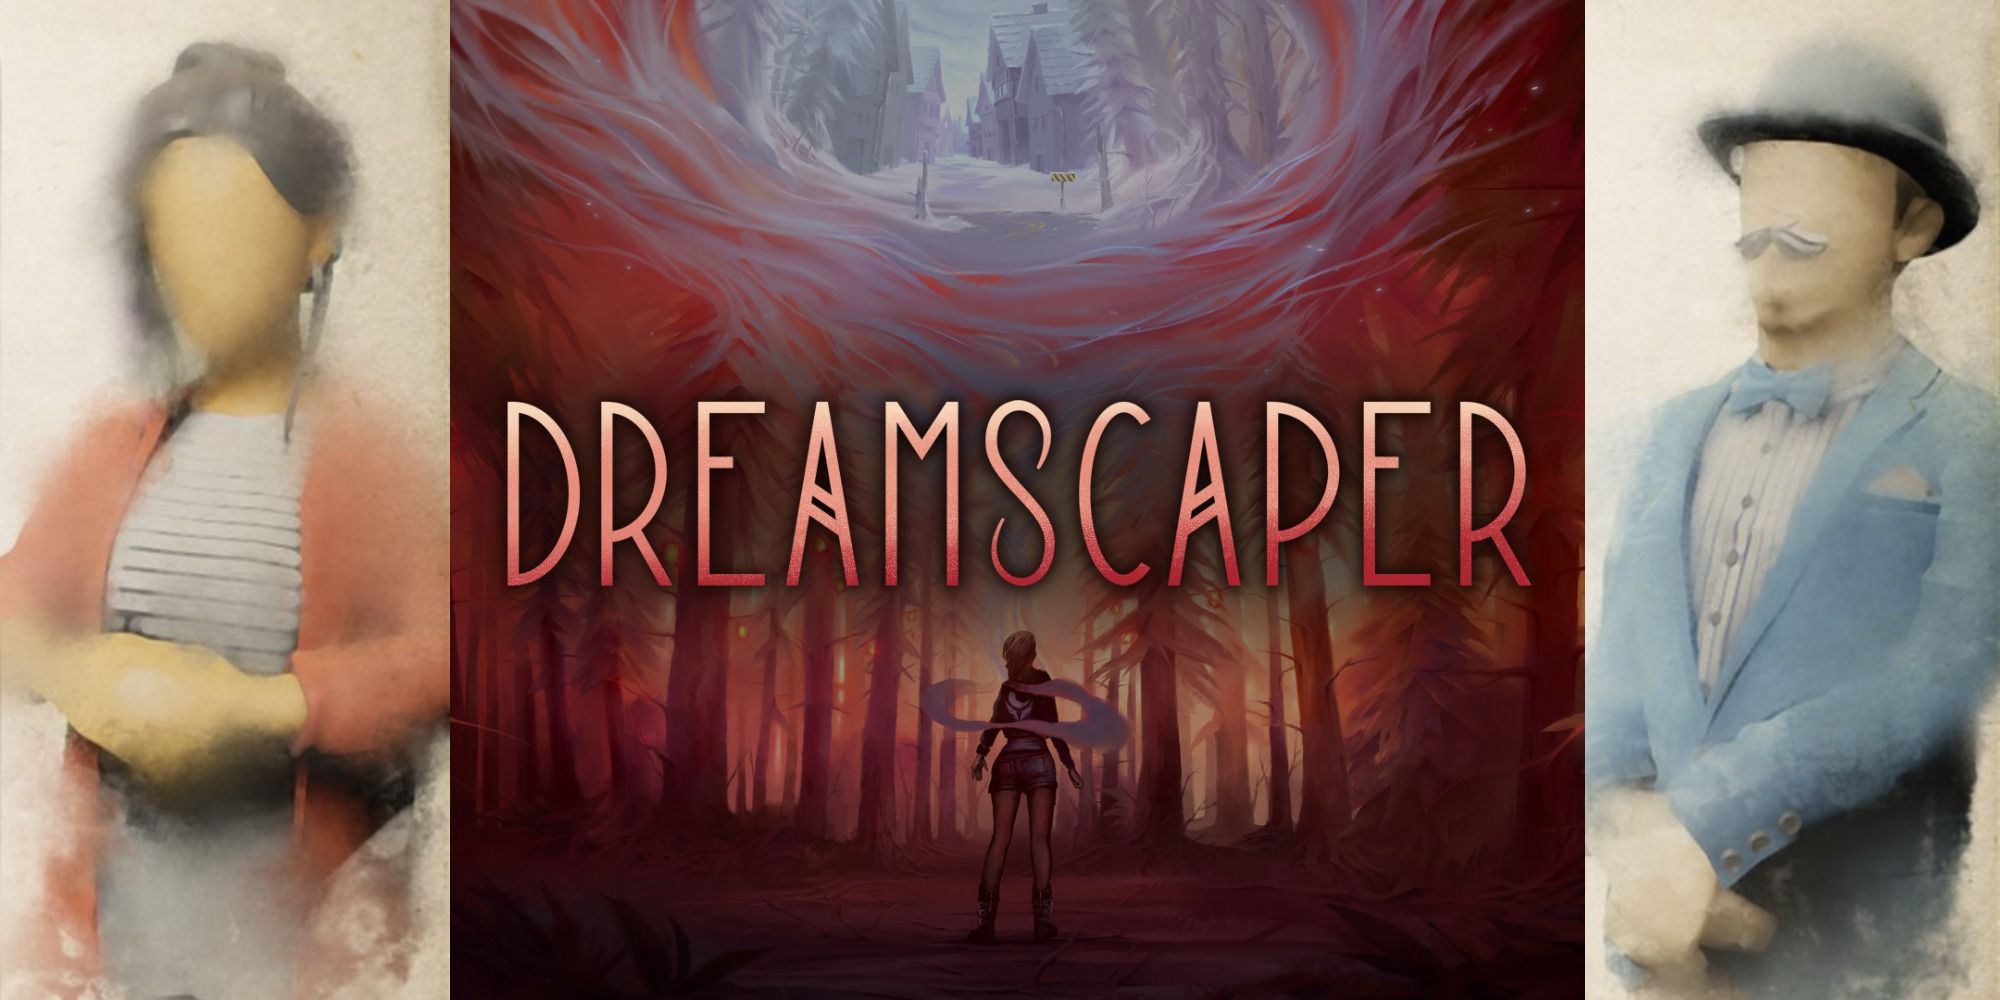 Dreamscaper download the new